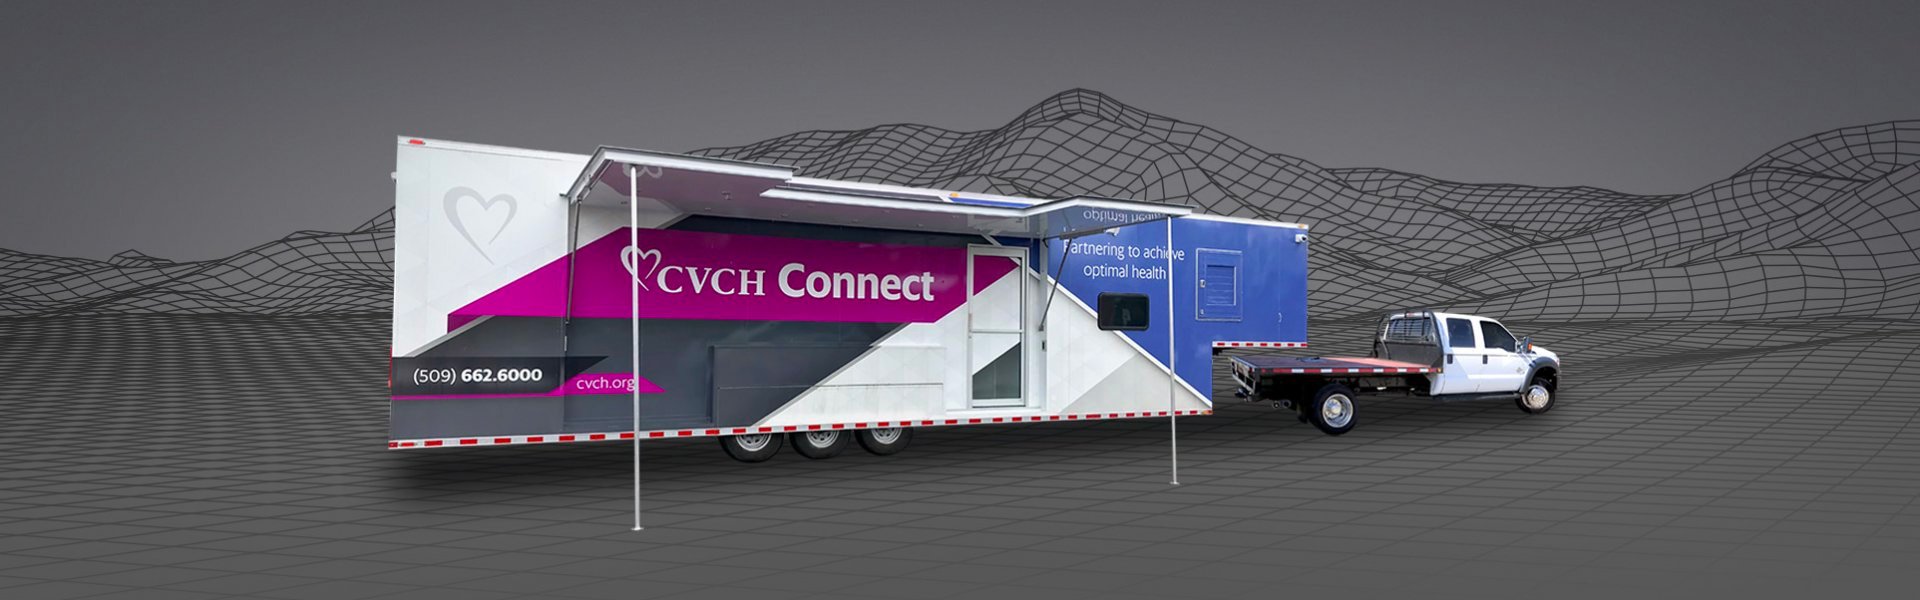 CVCH Connect Clinic